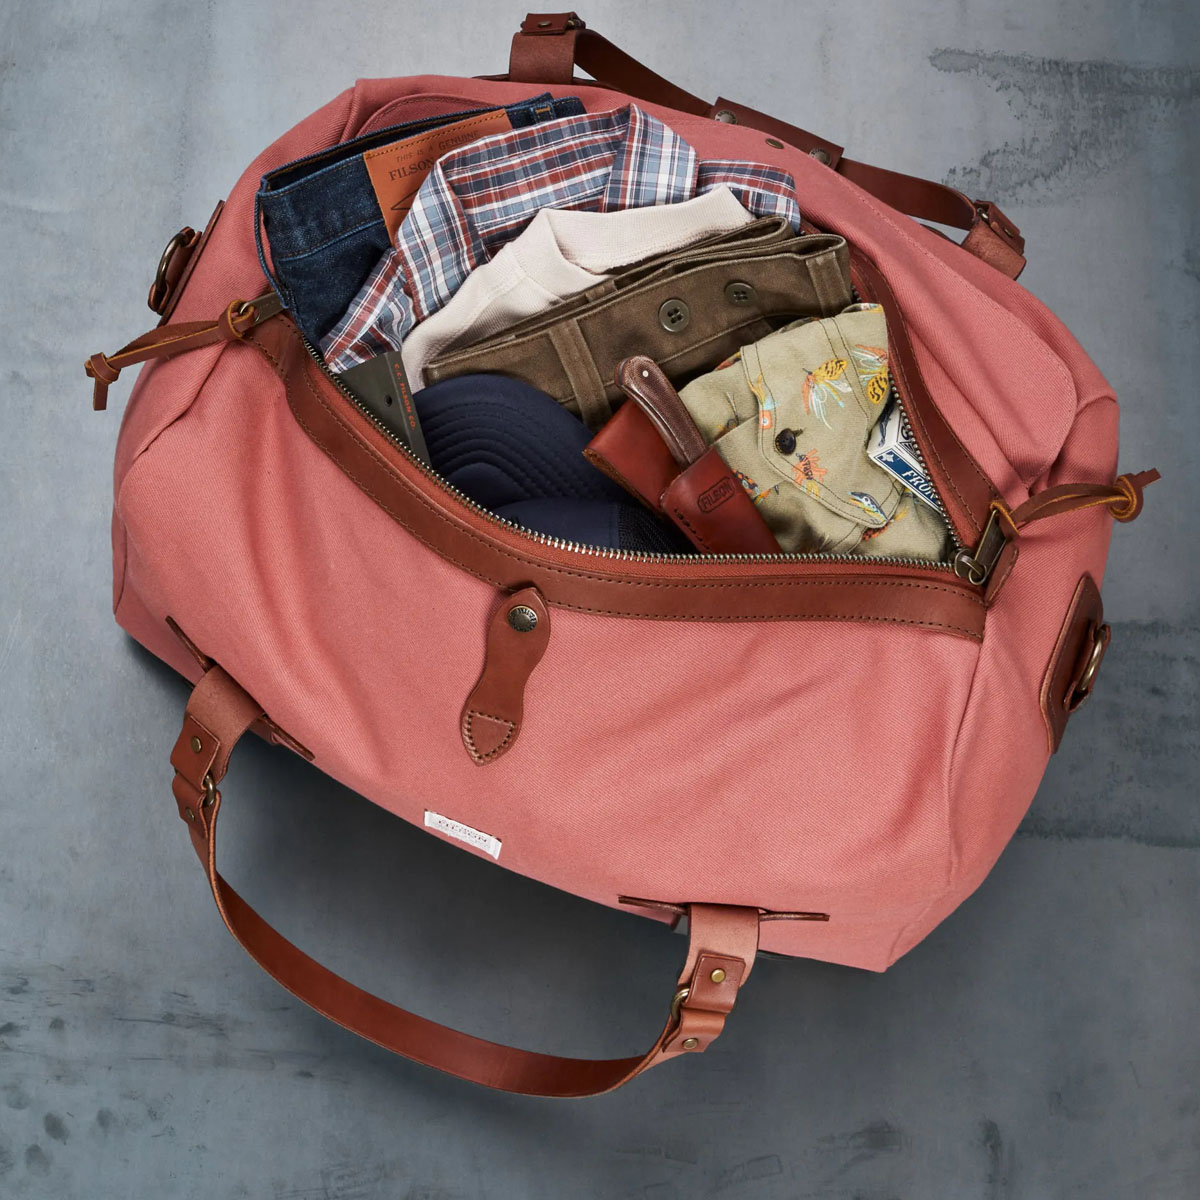 Filson Duffle Bag Medium Cedar Red, perfekt für einen Wochenendausflug oder eine kleine Geschäftsreise